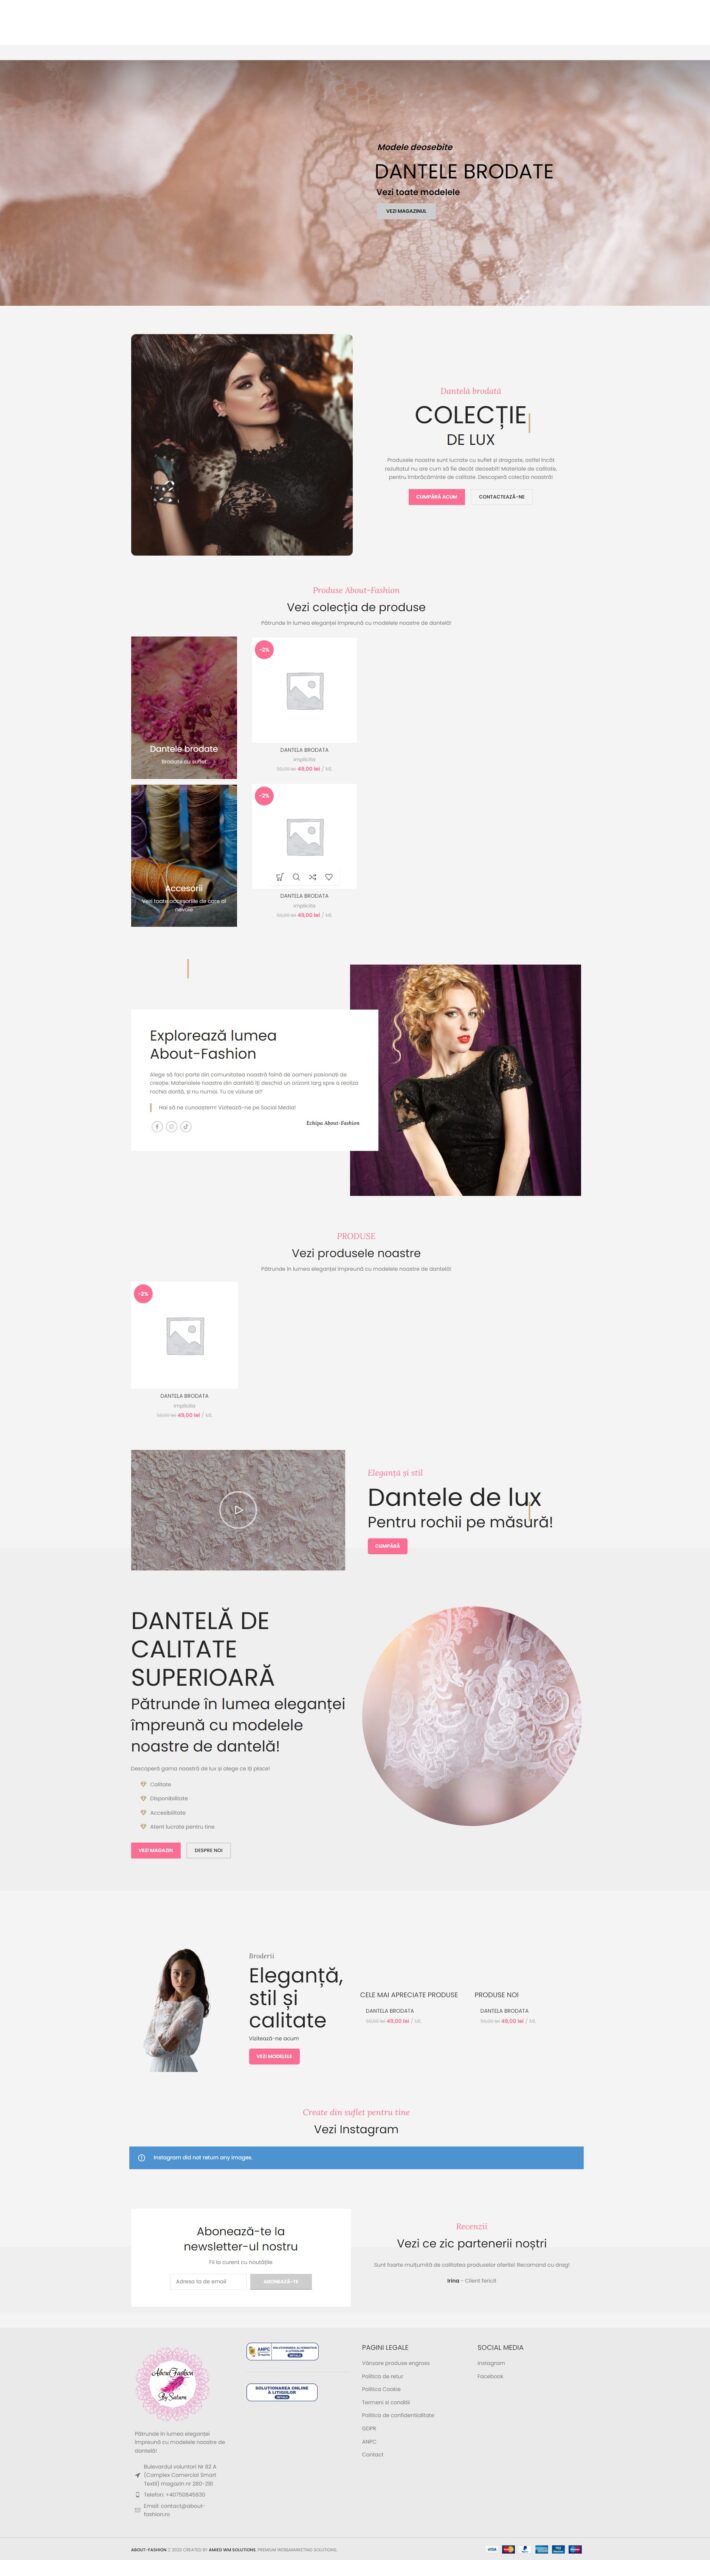 Dezvoltare site de prezentare | Creare magazin online Bucuresti